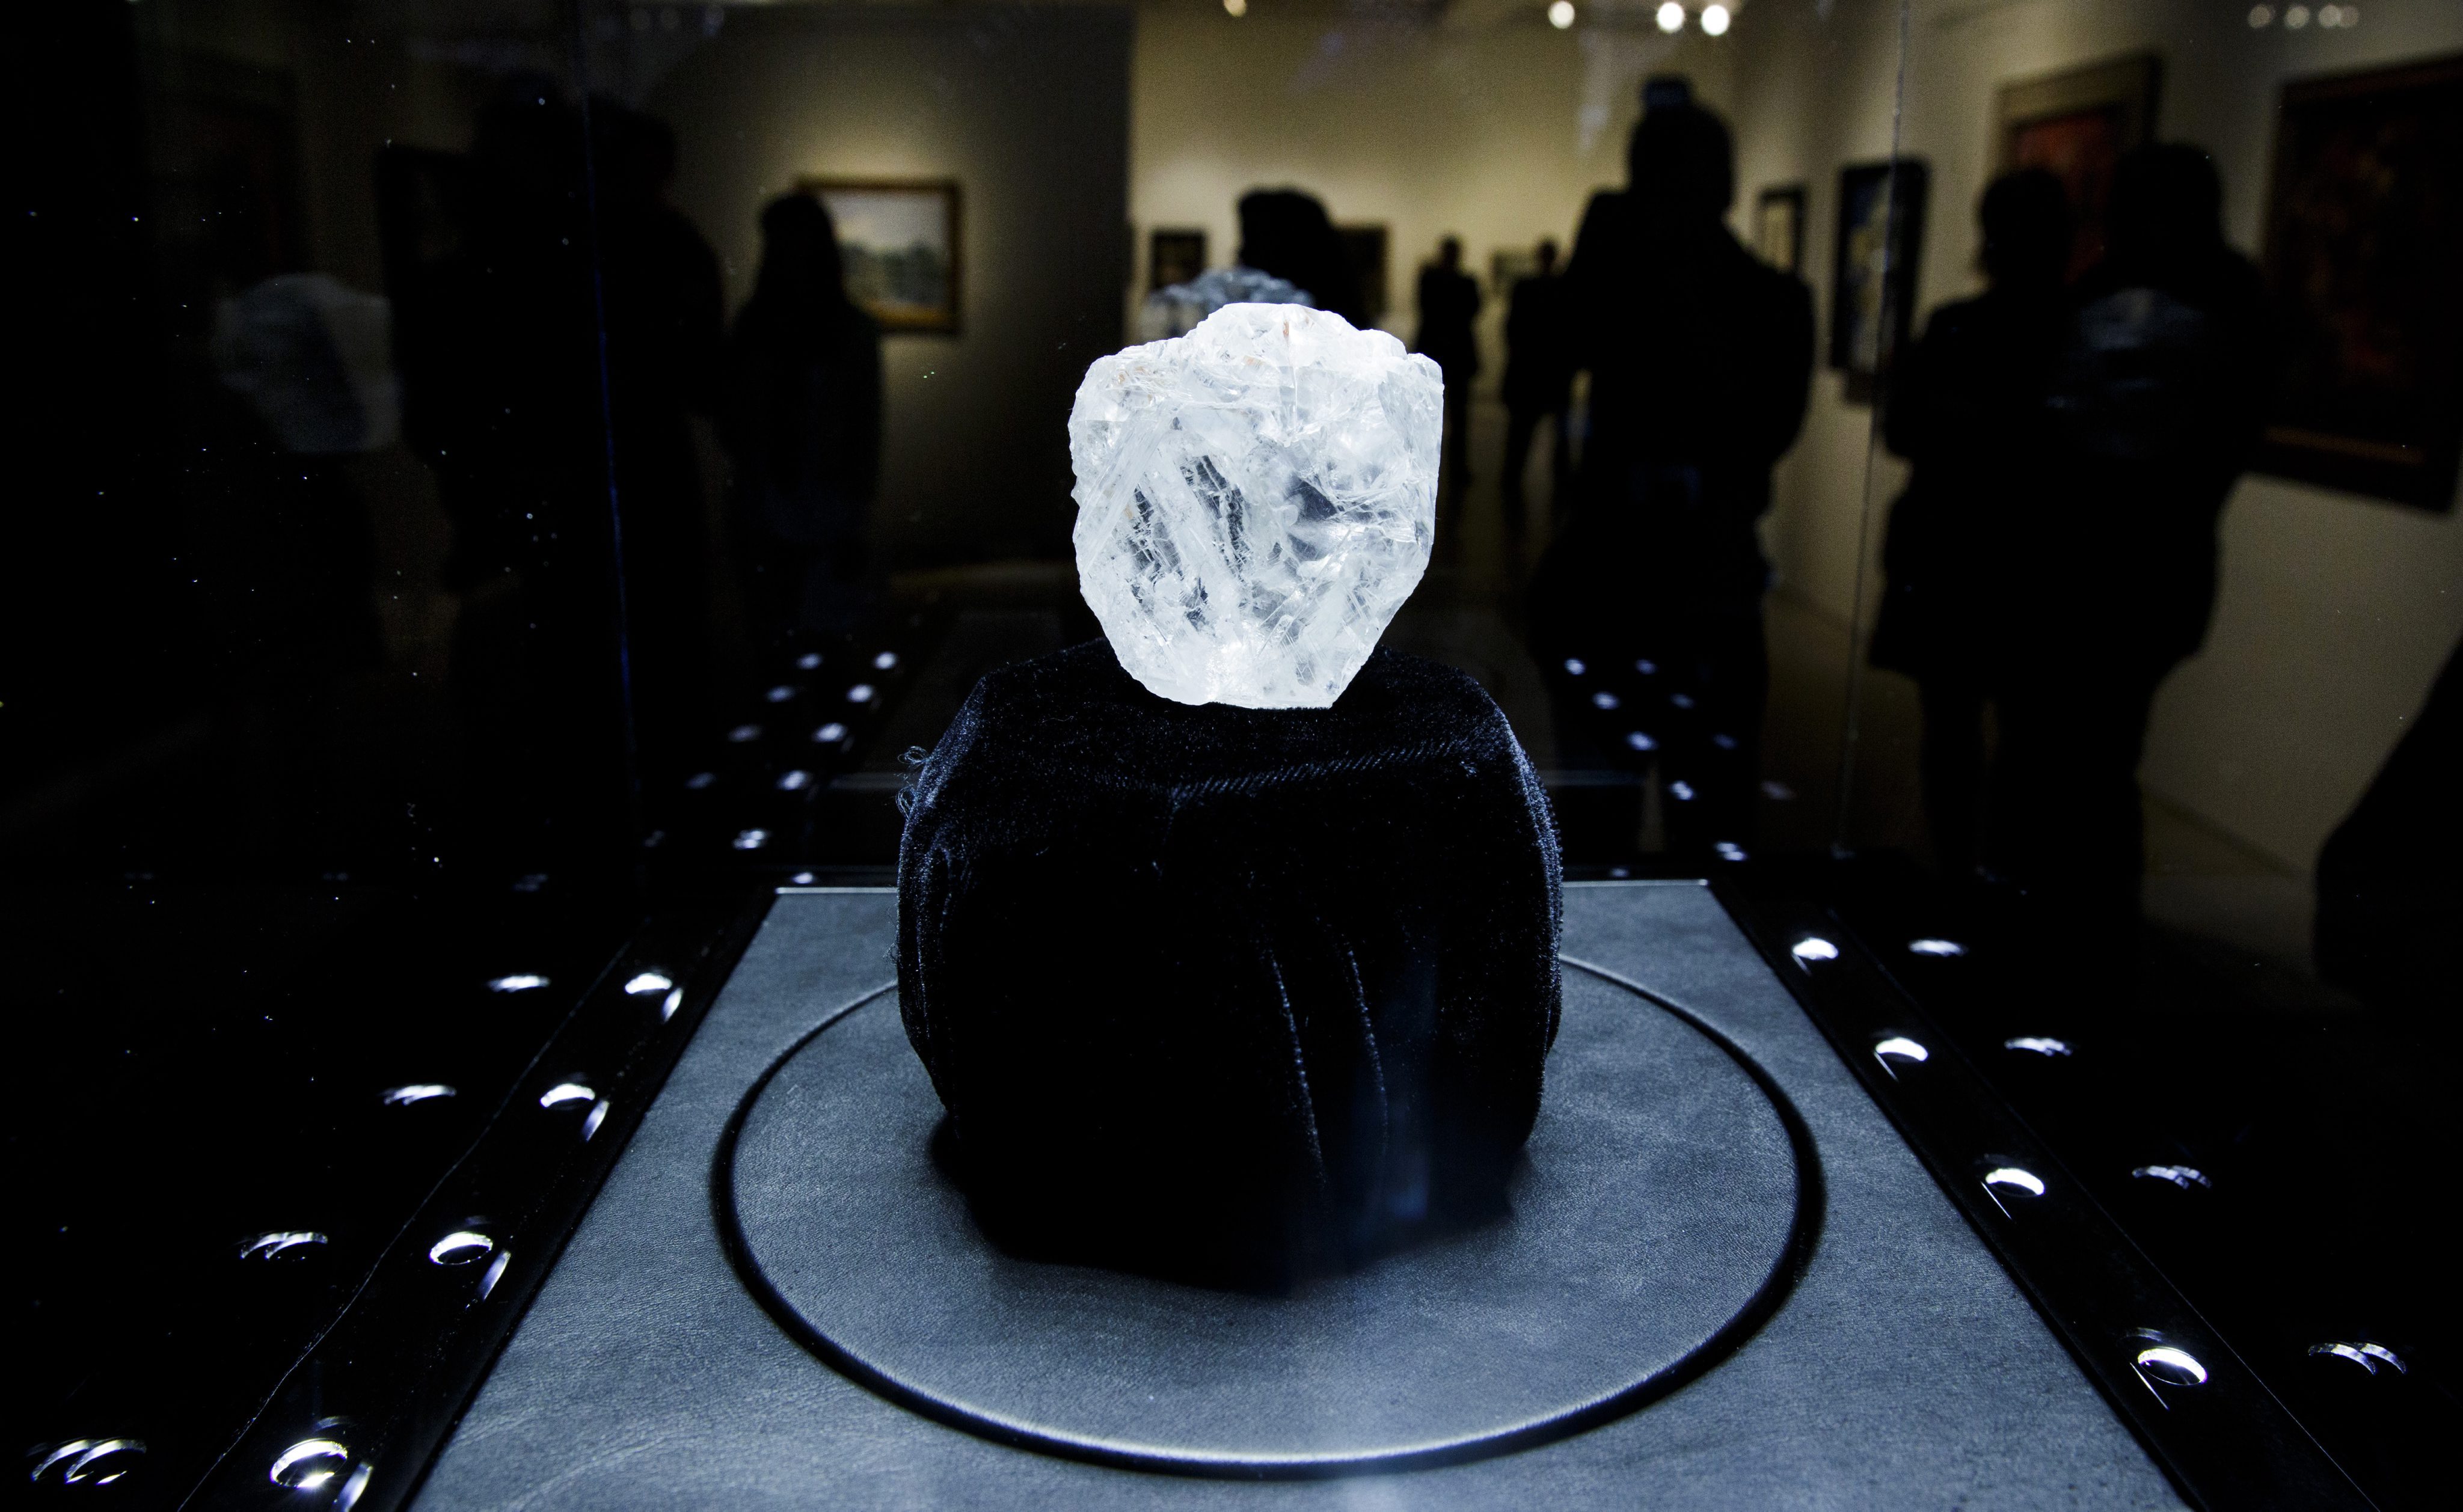 Σε δημοπρασία θα τεθεί το μεγαλύτερο διαμάντι του κόσμου